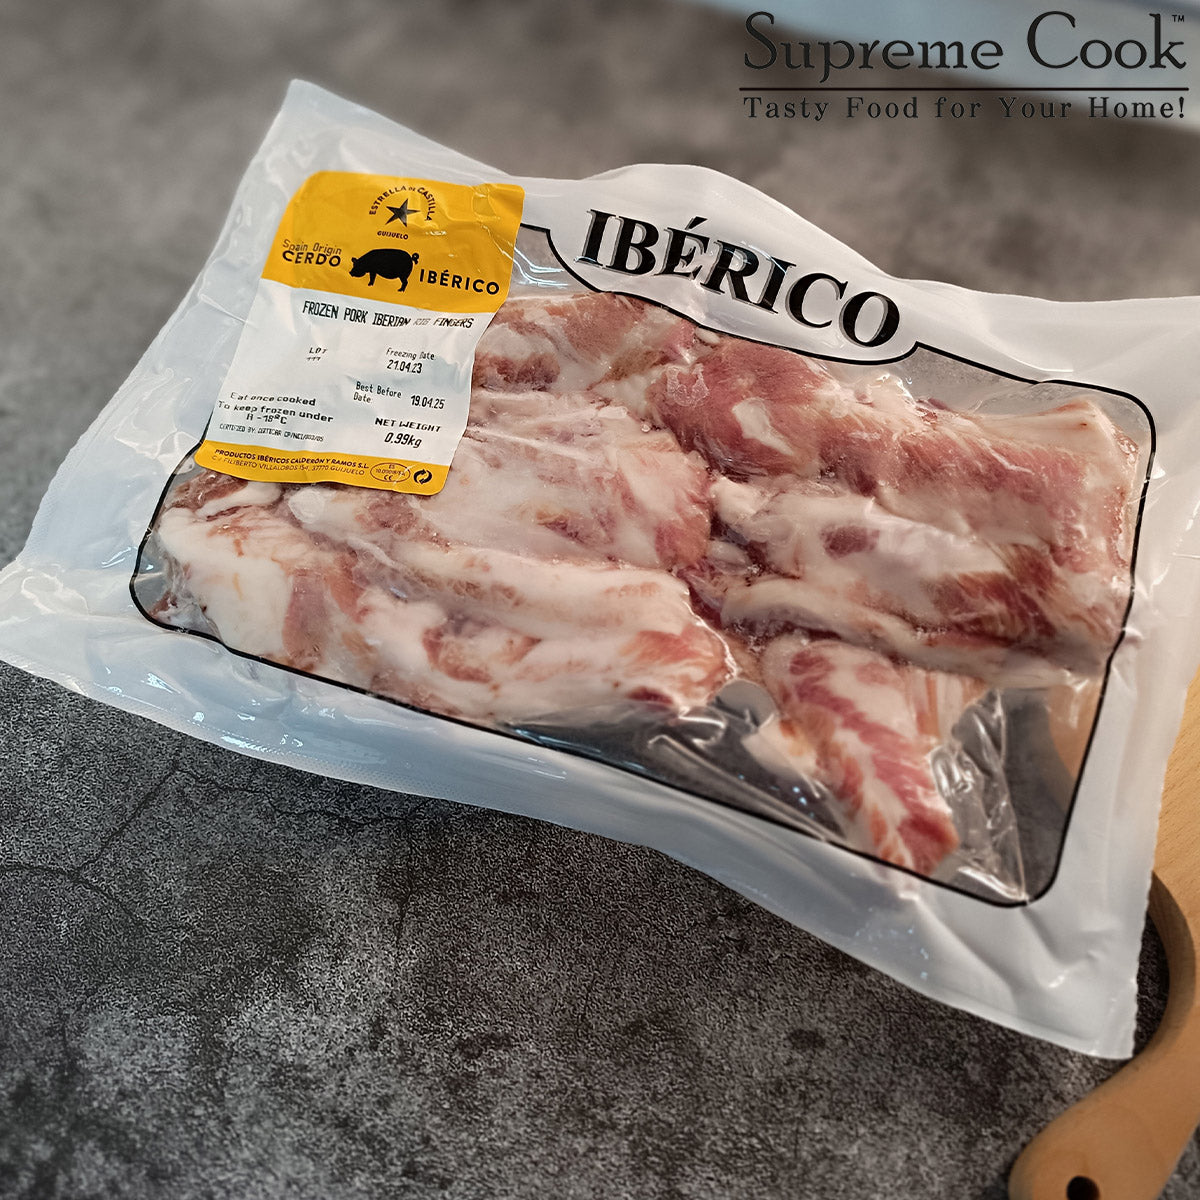 西班牙黑豚豬肋條肉 (Iberico Rib Fingers 伊比利亞 星) (約0.9kg) (急凍-18°C)